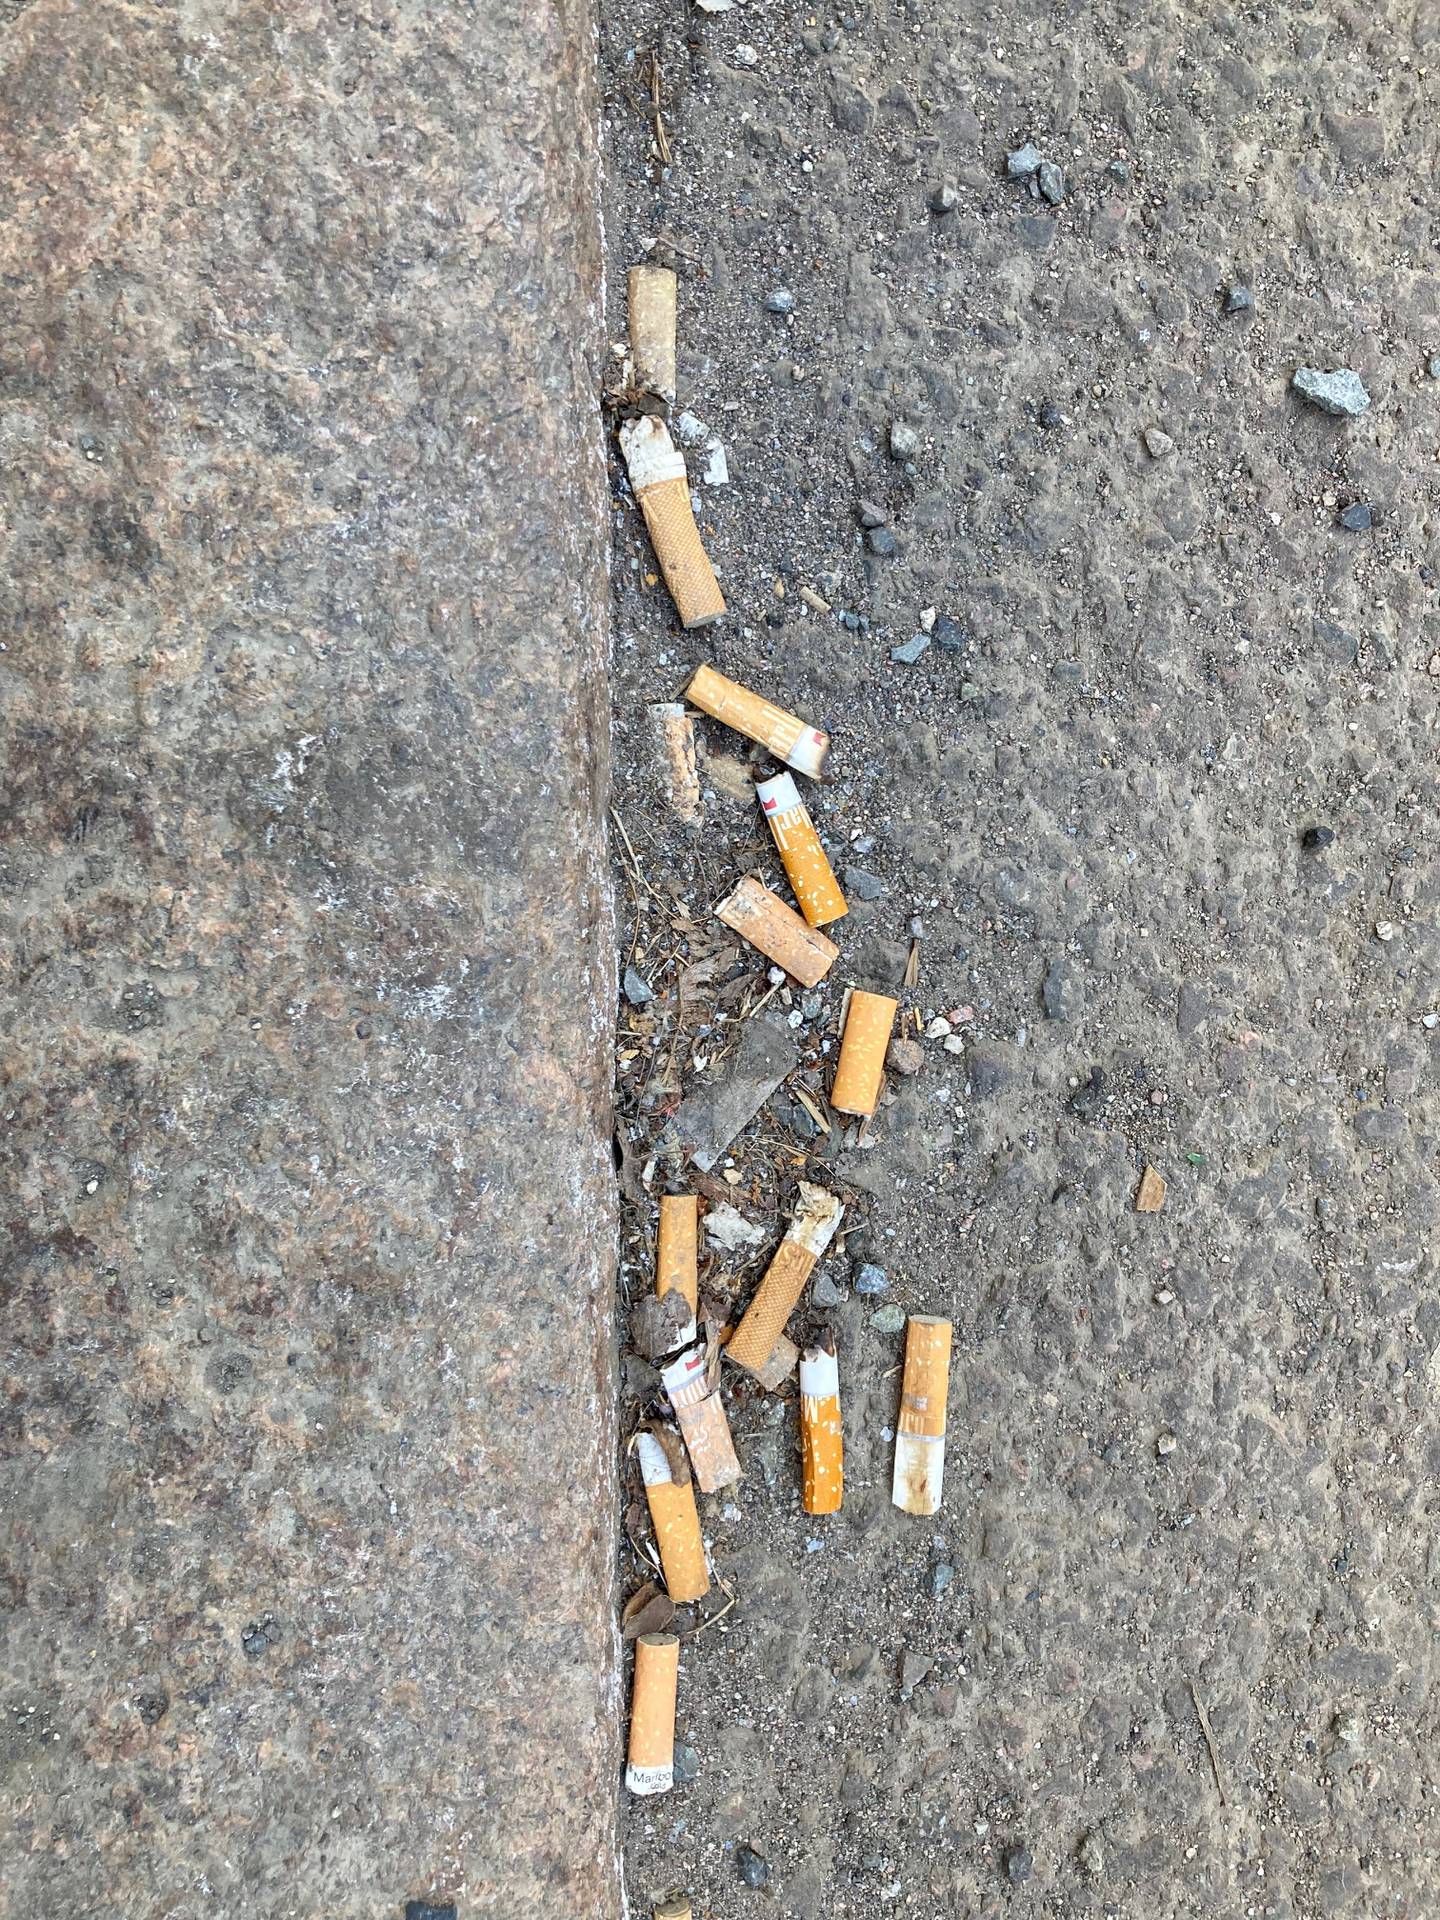 Også sigarettsneiper er det forbudt å kaste fra seg, men det forbudet er det mange som blåser i.